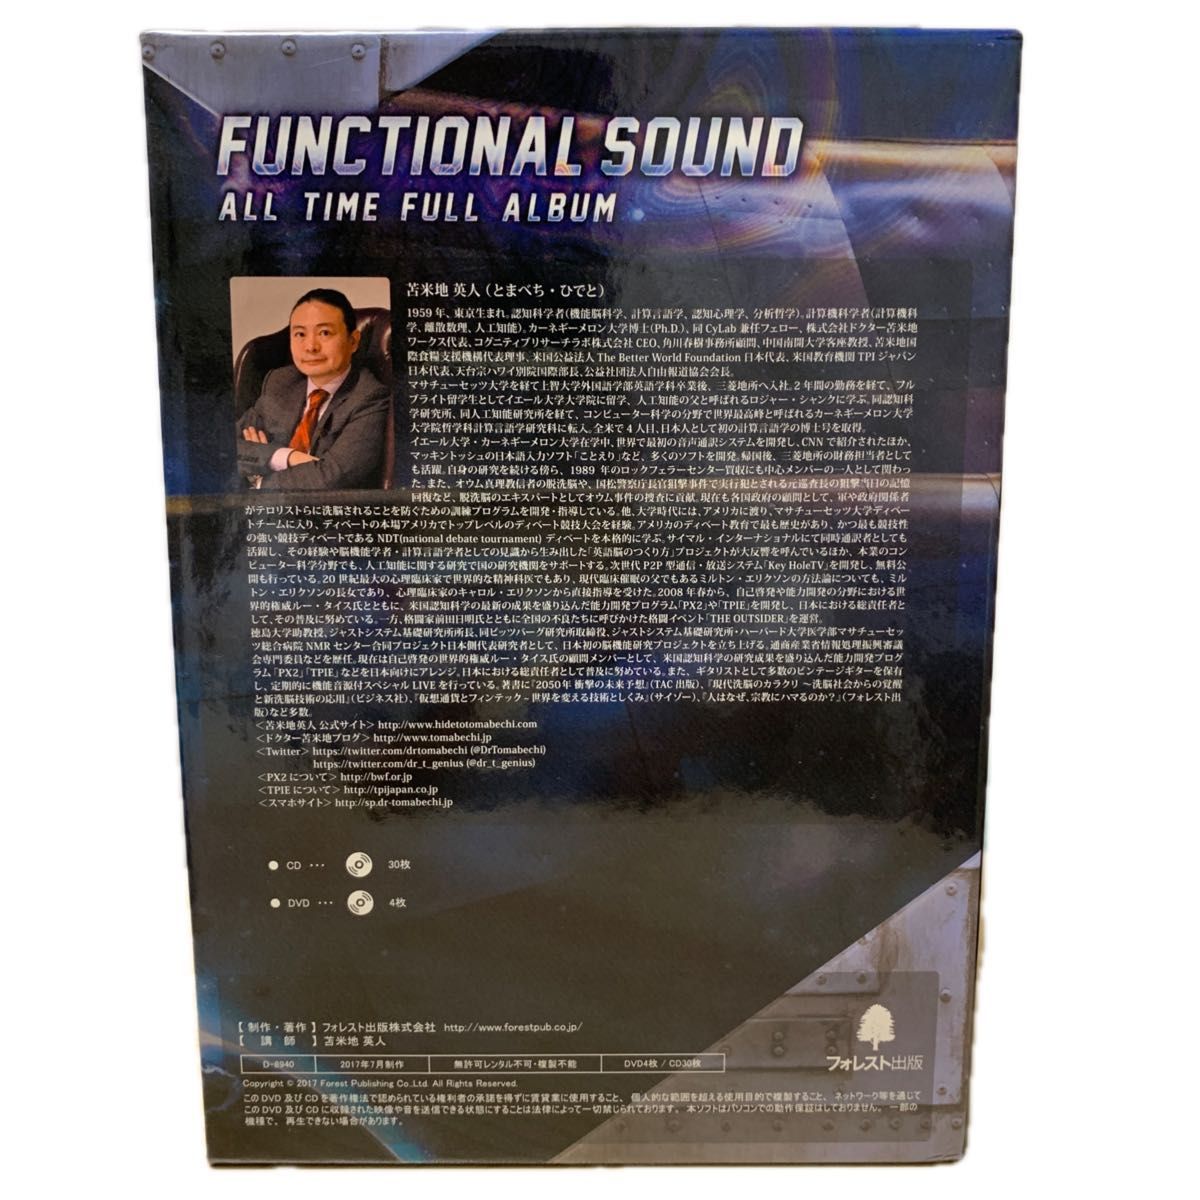 苫米地英人　FUNCTIONAL SOUND 特殊音源CD・DVD (※DVD Disc1のみ欠品)